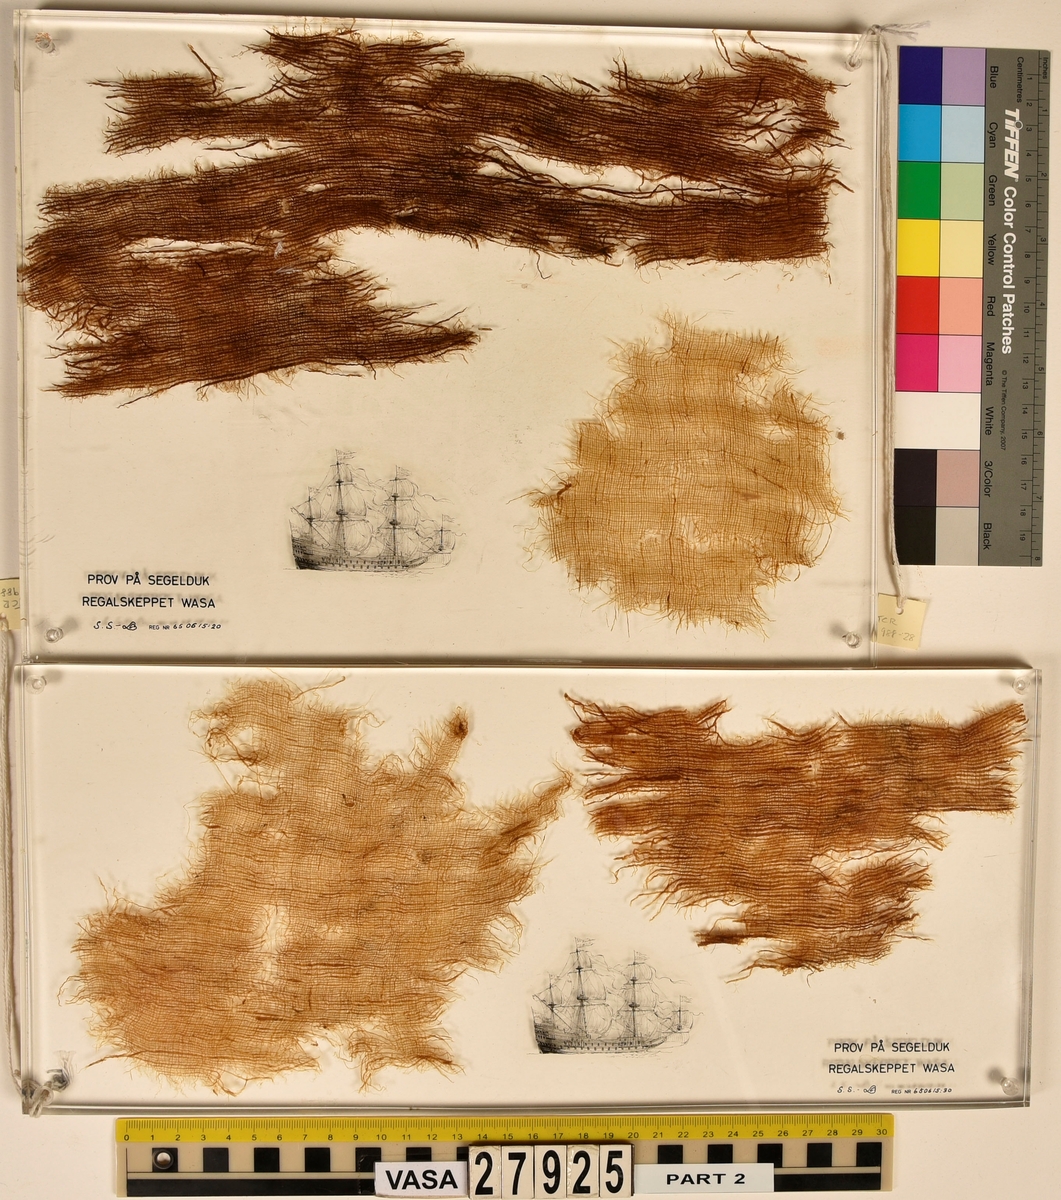 Plastingjutna fragment av segel och knopar med text på över vad de föreställer.
19 stycken av plastgjutningarna innehåller segelfragment och 3 stycken innehåller knopar.